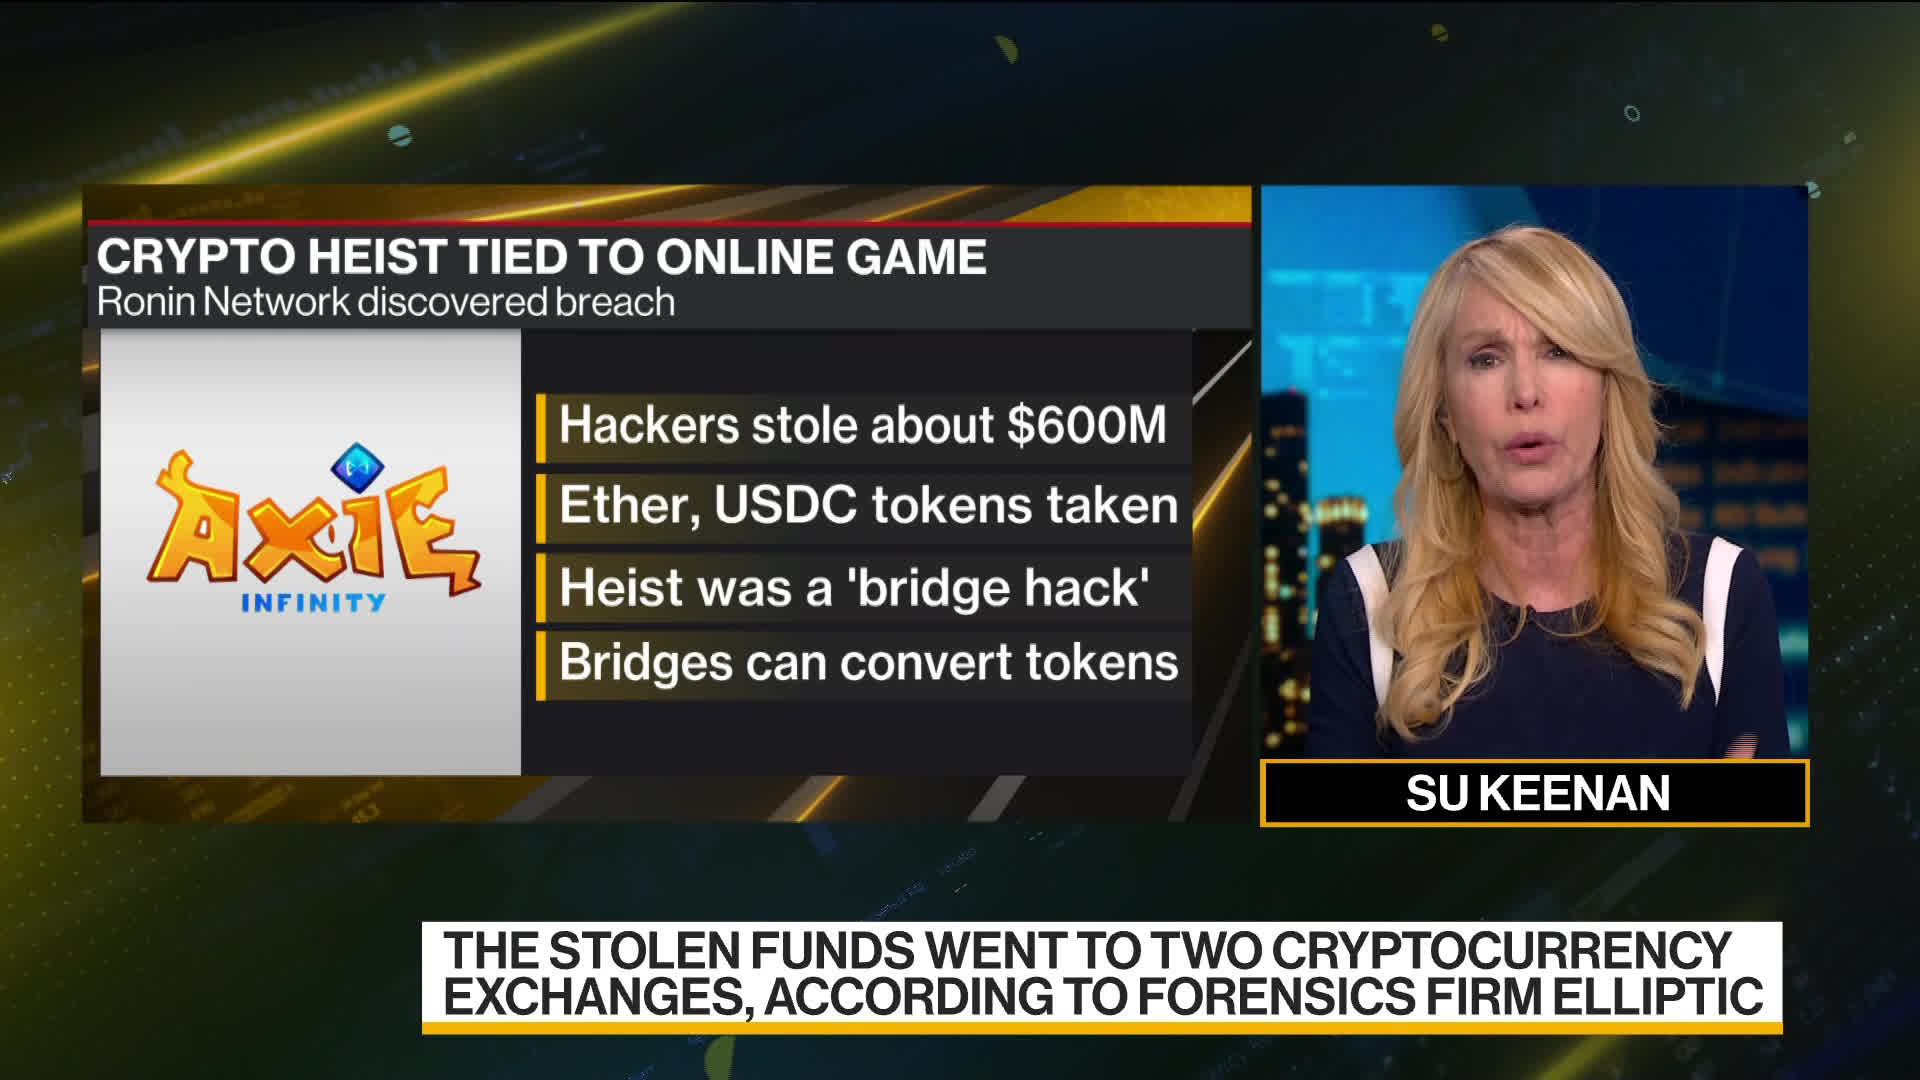 Ronin, do Axie Infinity, sofre maior hack da história das criptomoedas: US$  625 milhões